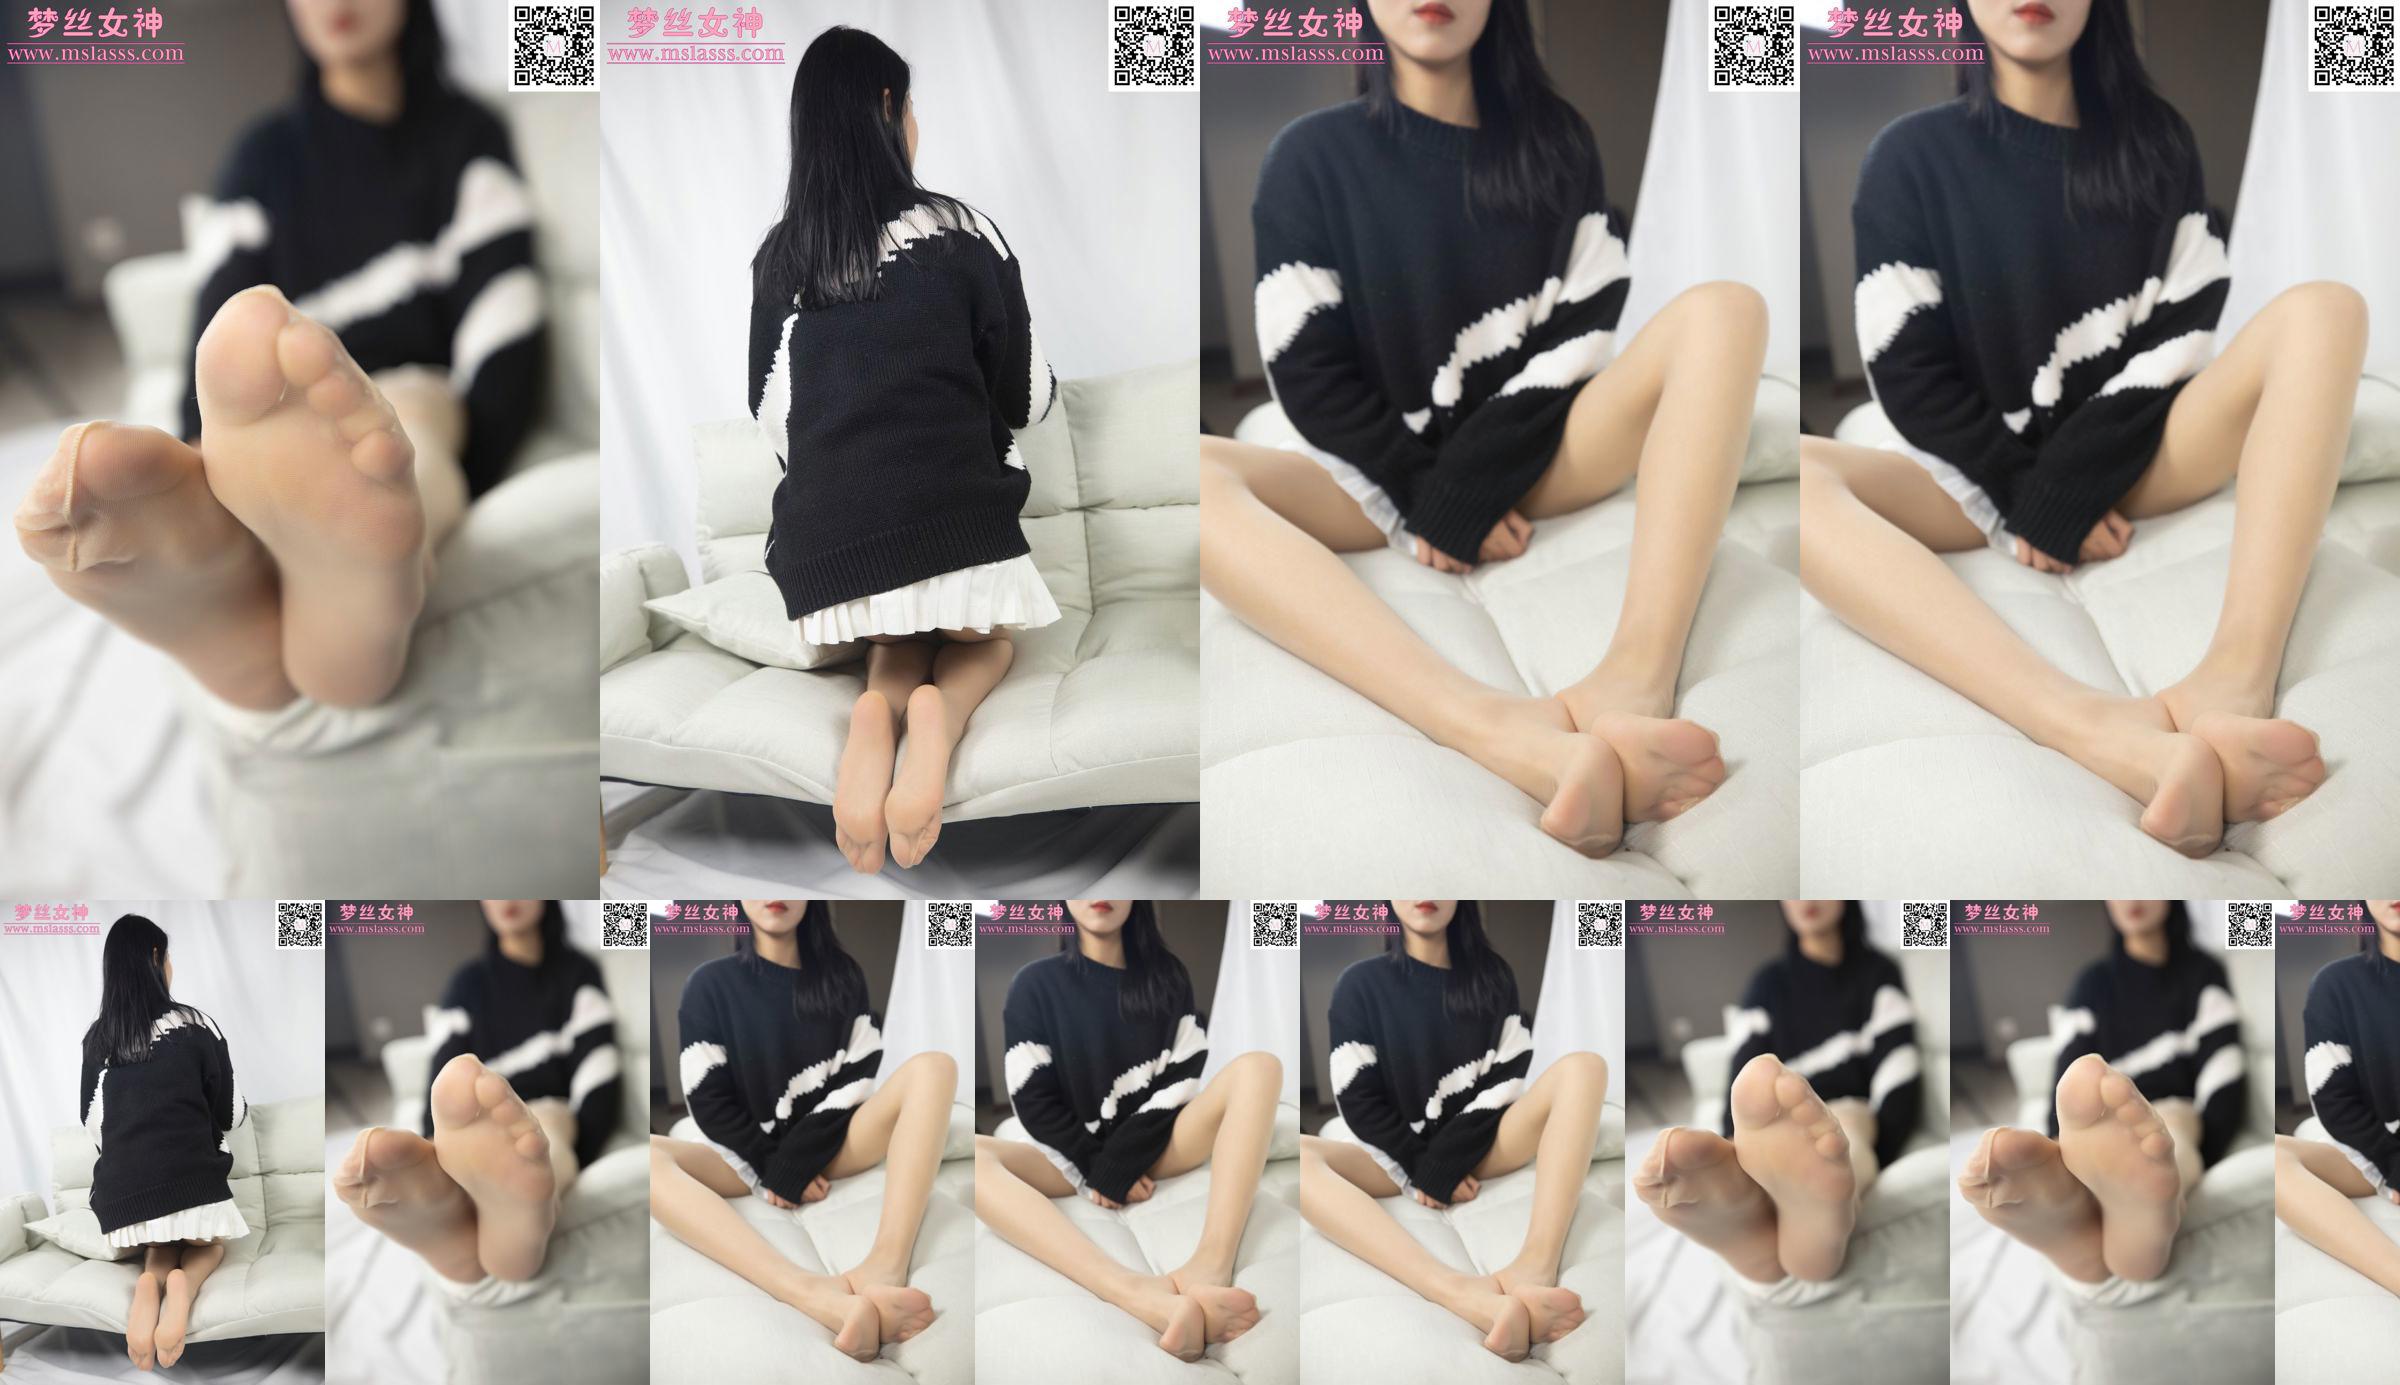 [Goddess of Dreams MSLASS] Sweter Xiaomu nie może powstrzymać jej długich nóg No.80b37c Strona 14